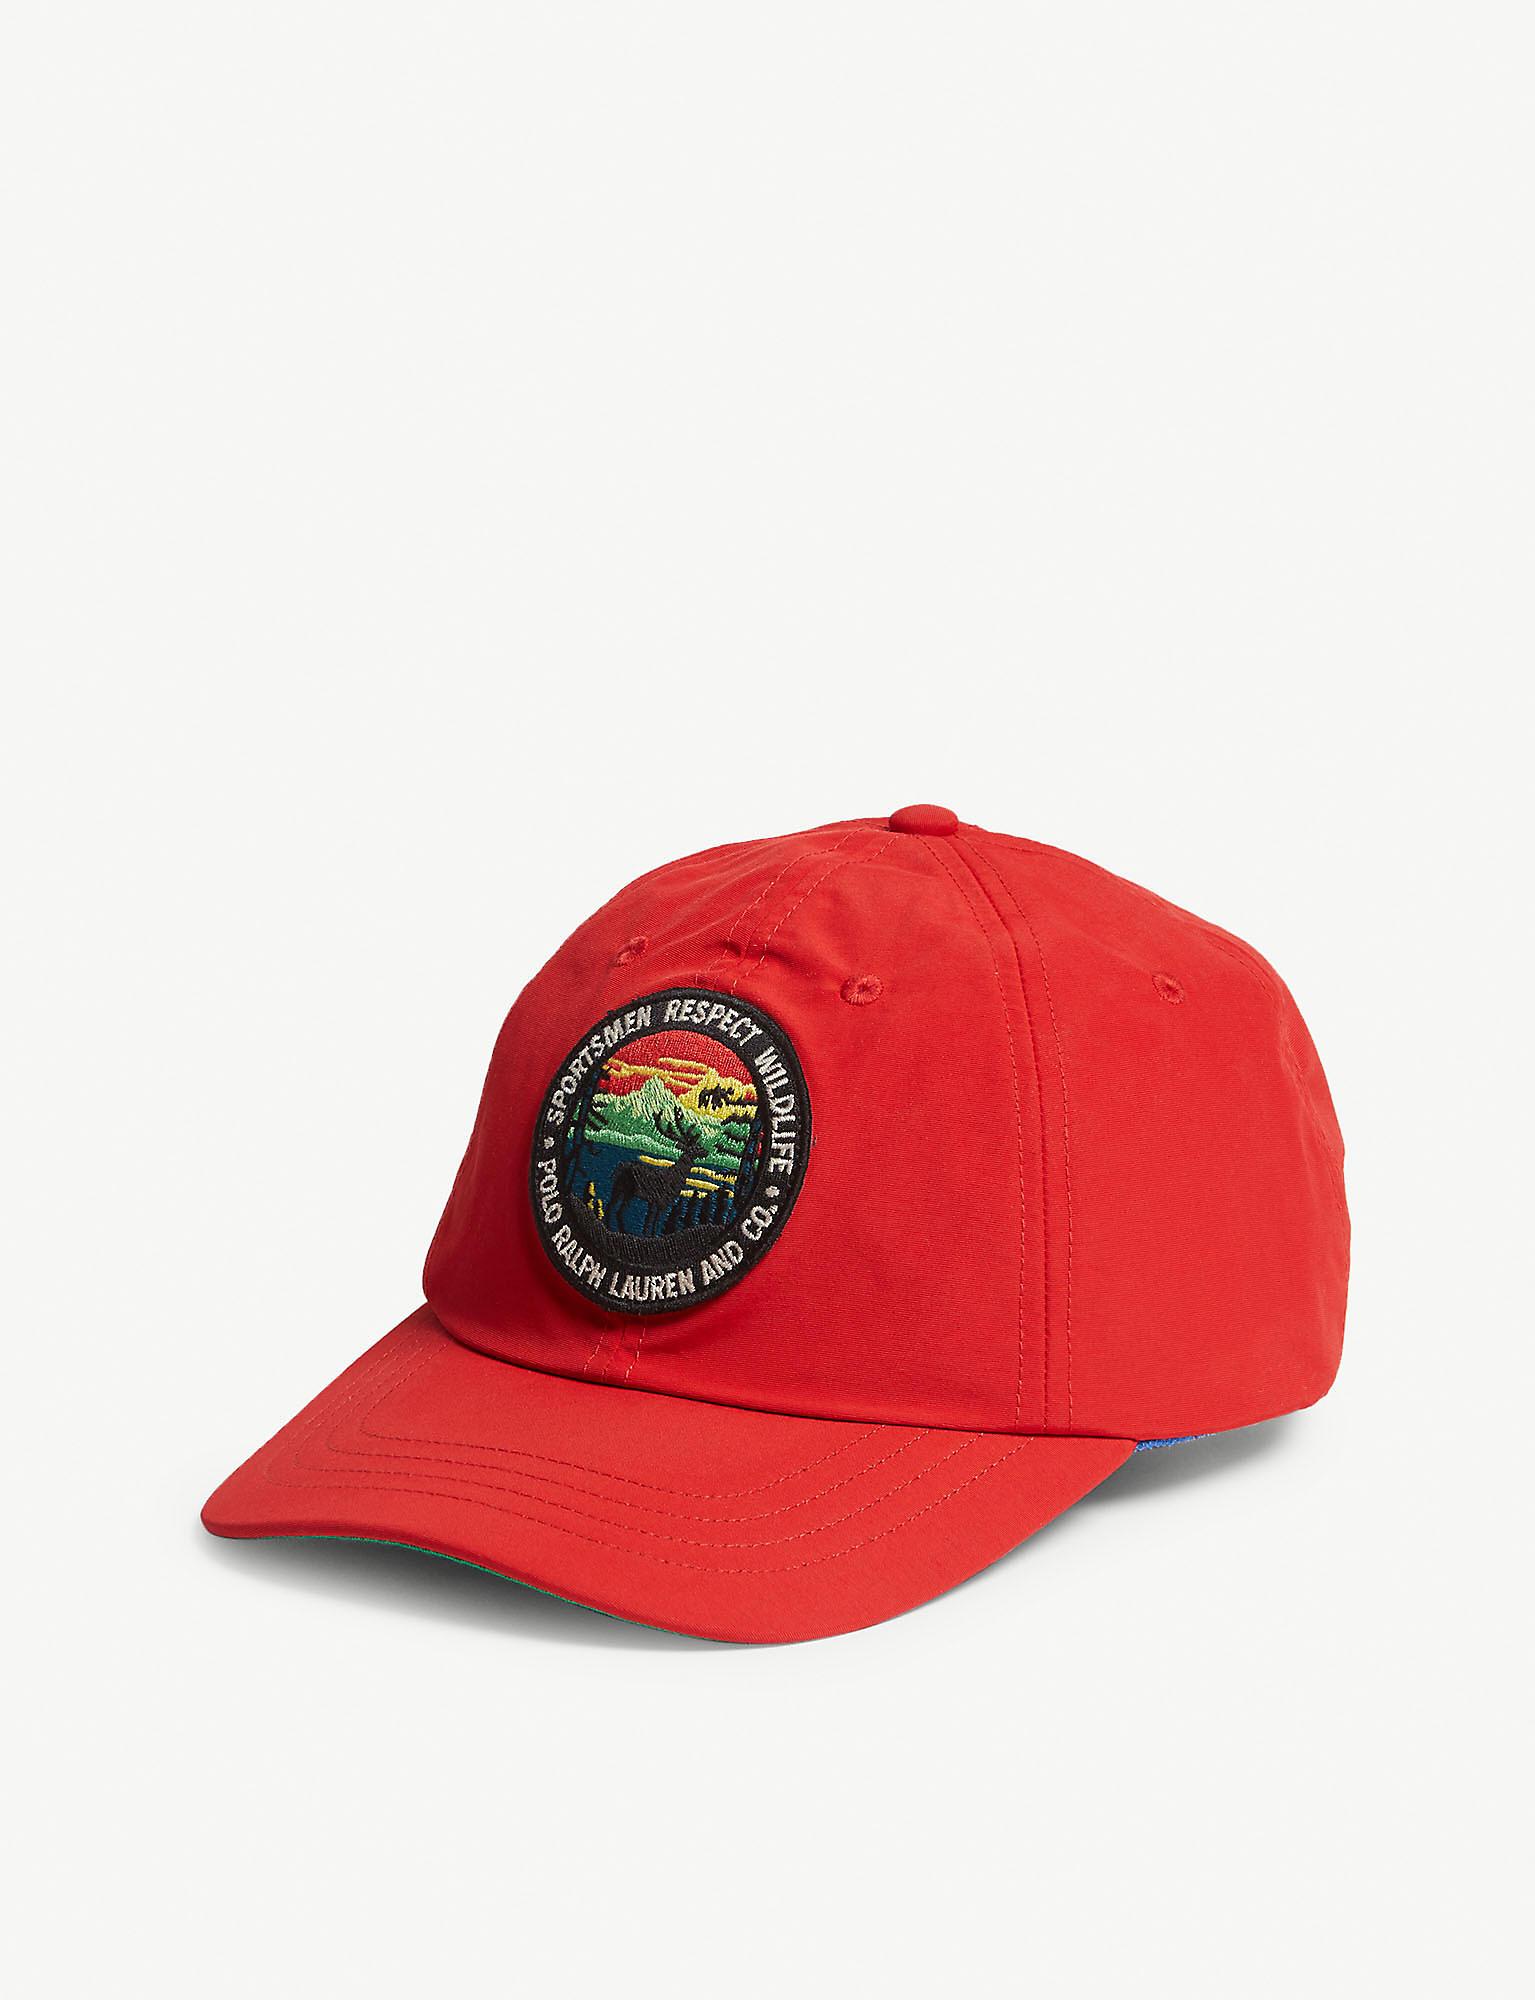 polo wildlife hat